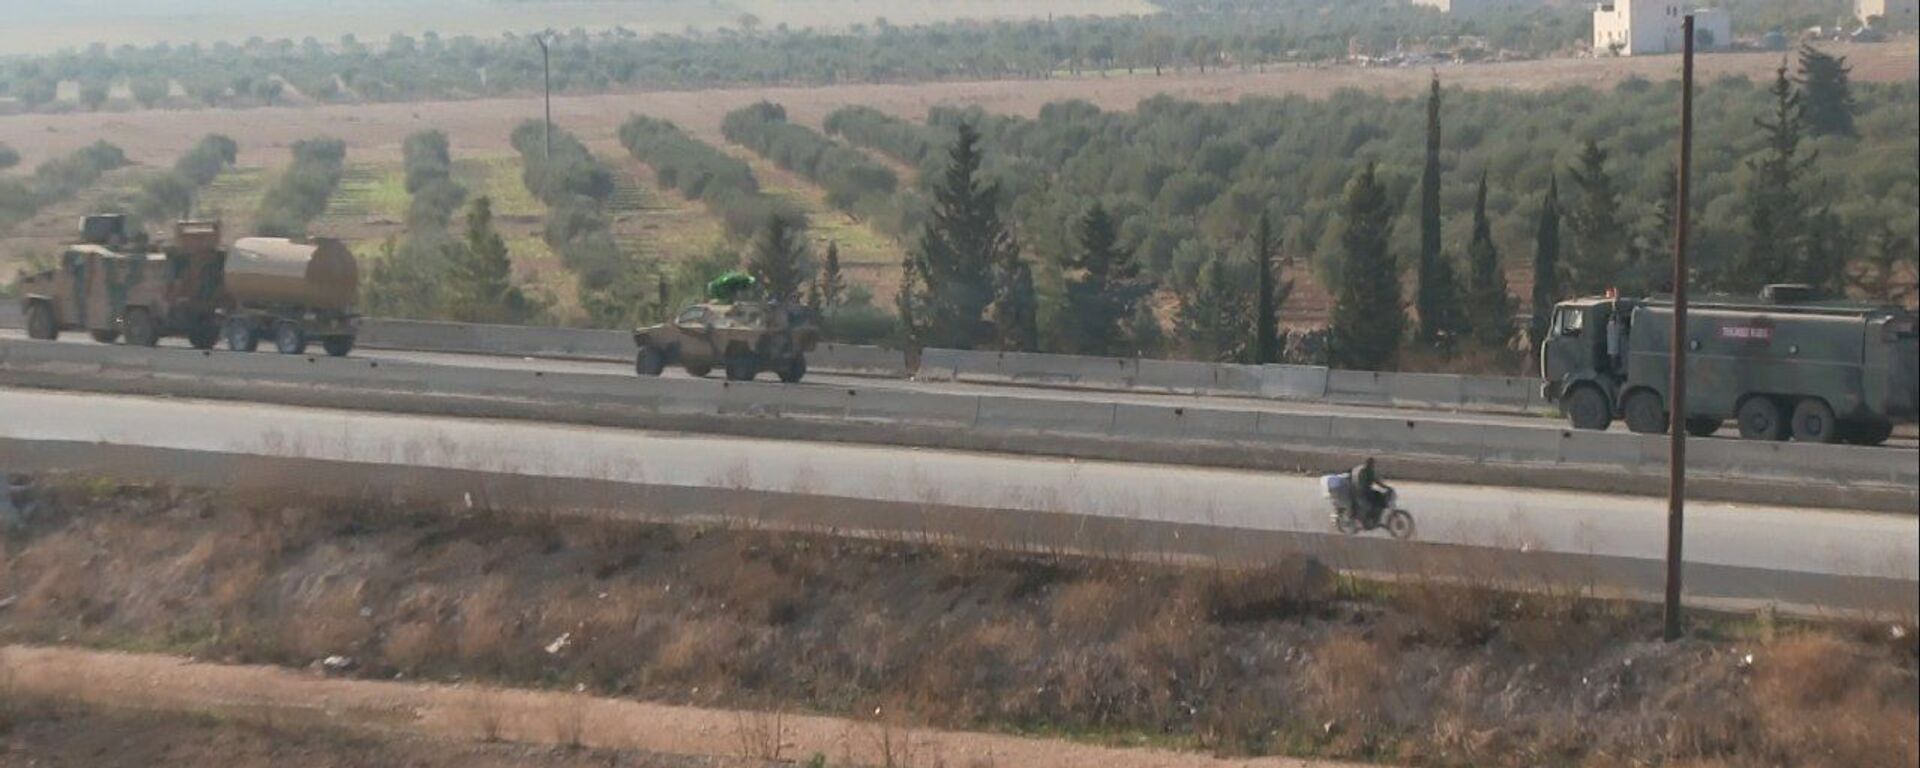  الجيش السوري يدخل نقطة مراقبة الكورانيعلى طريق (M5) بعد انسحاب القوات التركية - سبوتنيك عربي, 1920, 04.10.2022